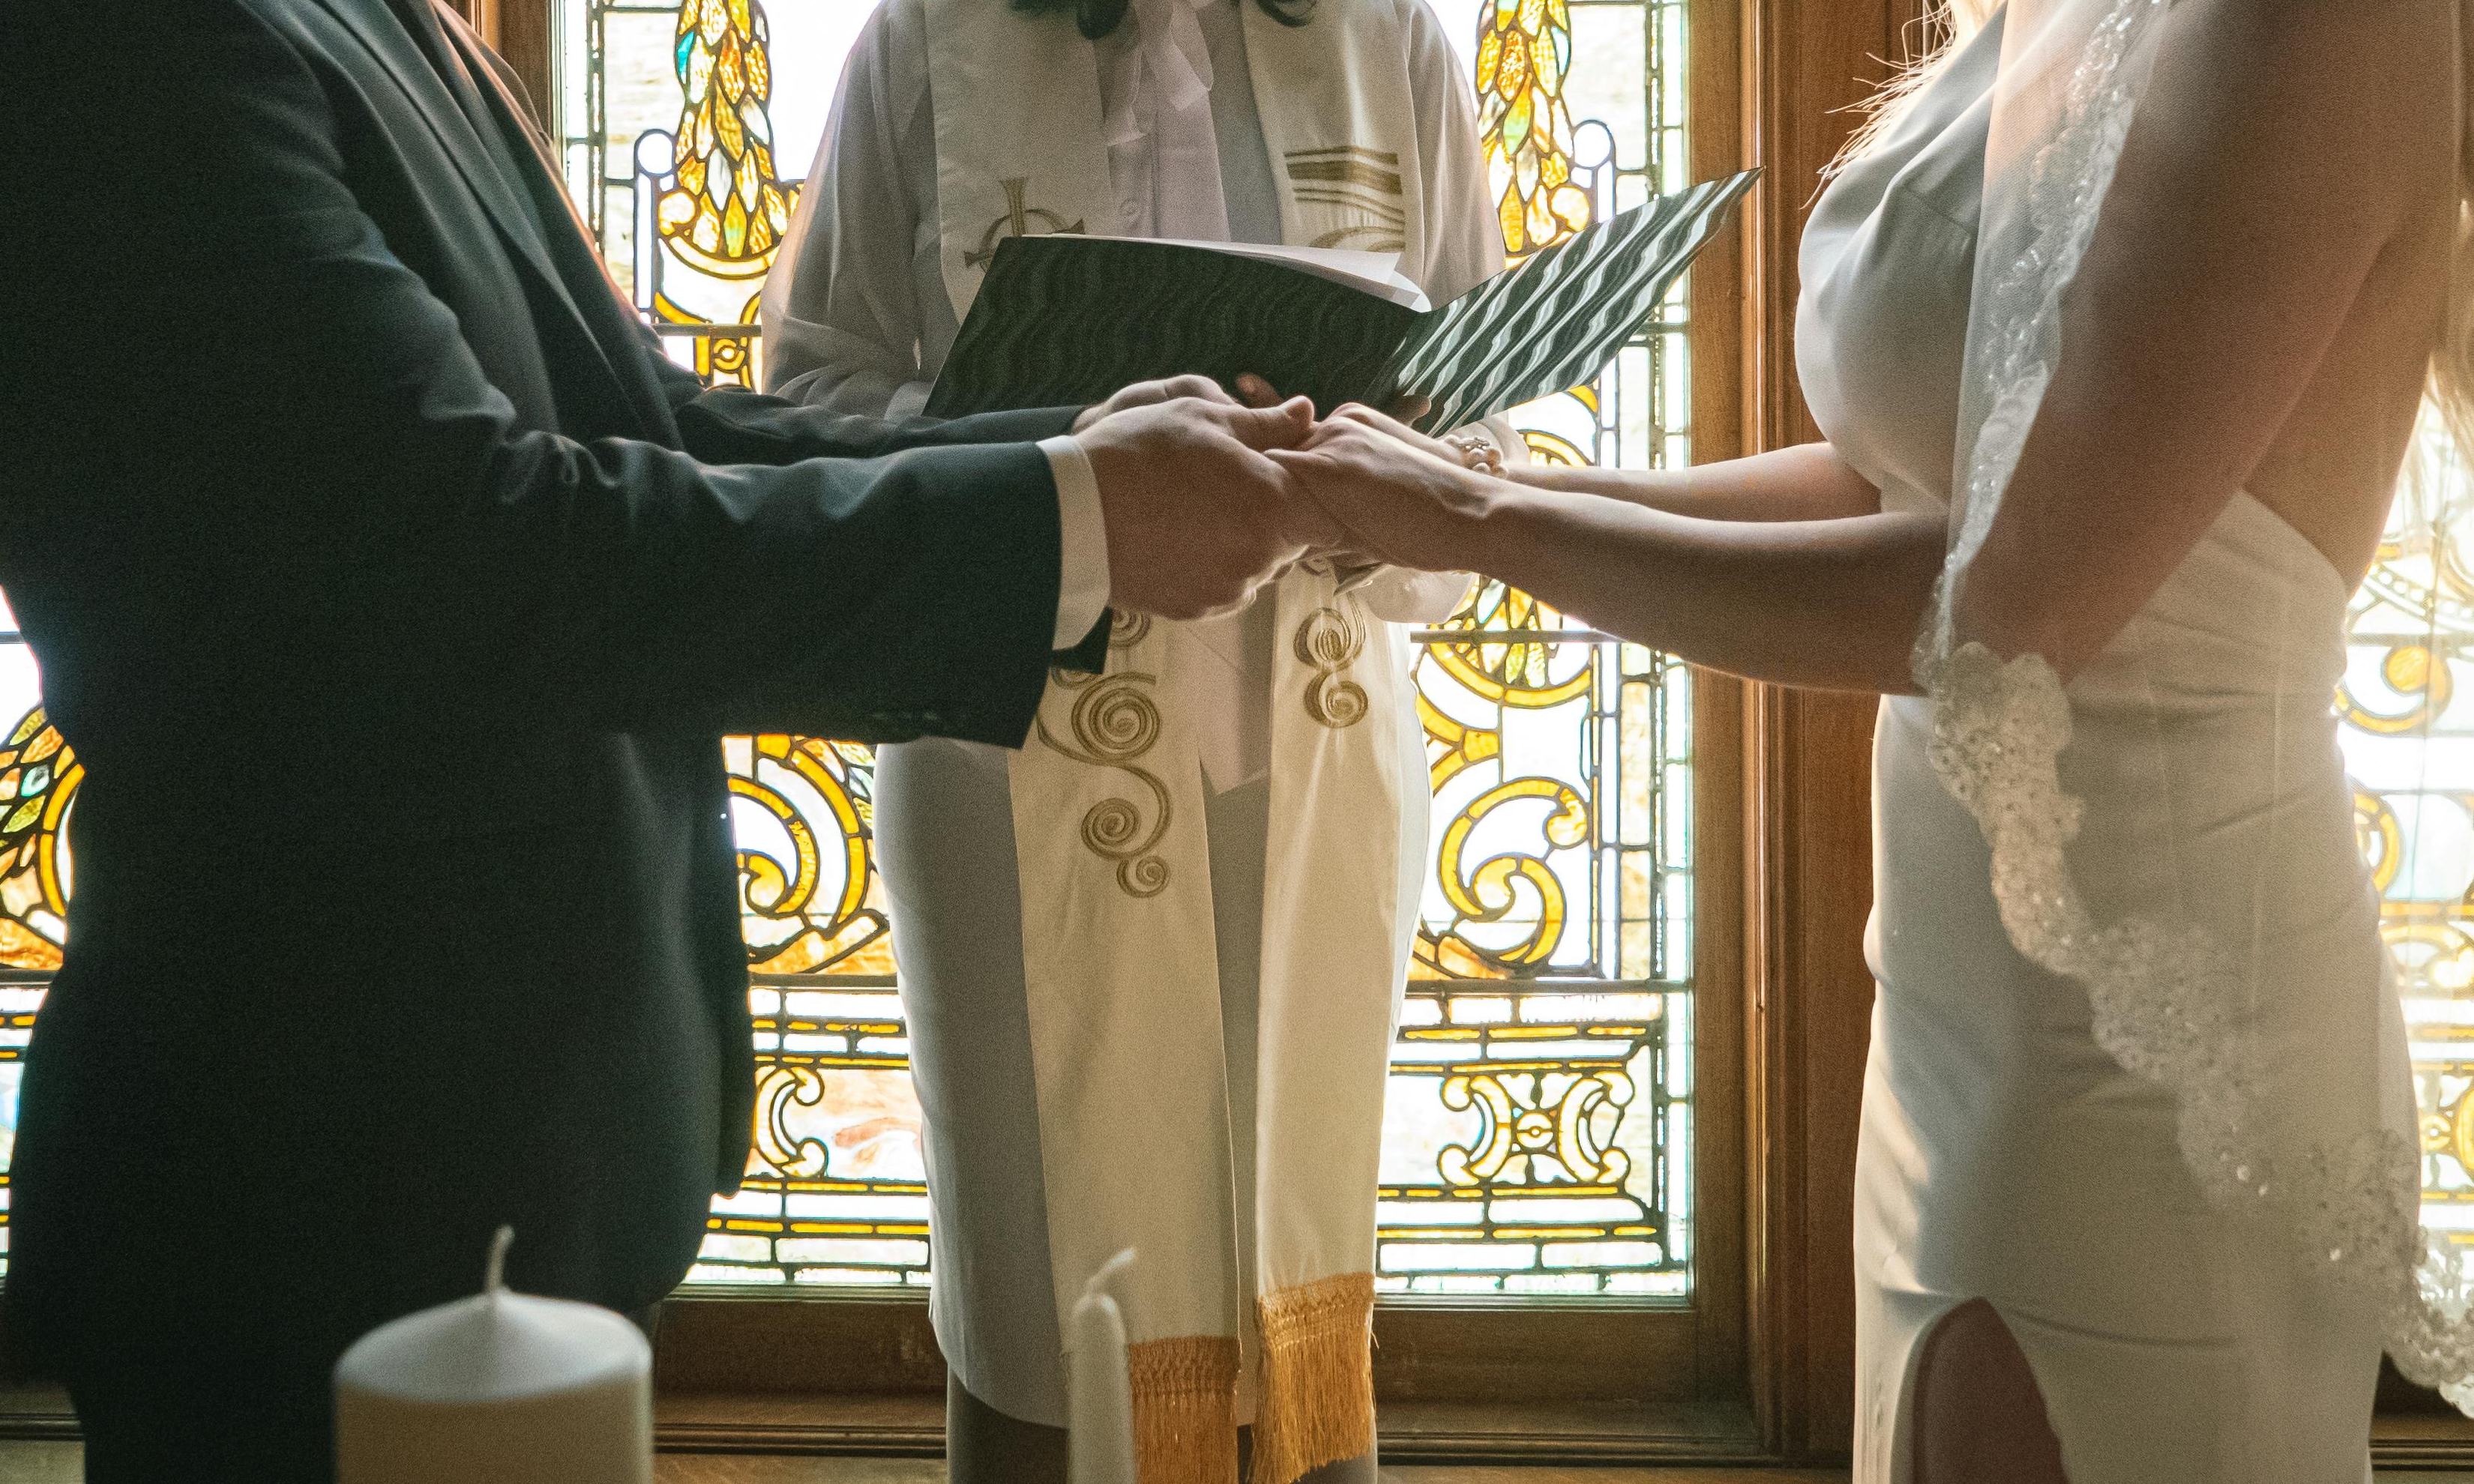 Kaia et son futur mari se donnent la main devant l'autel | Source : Pexels